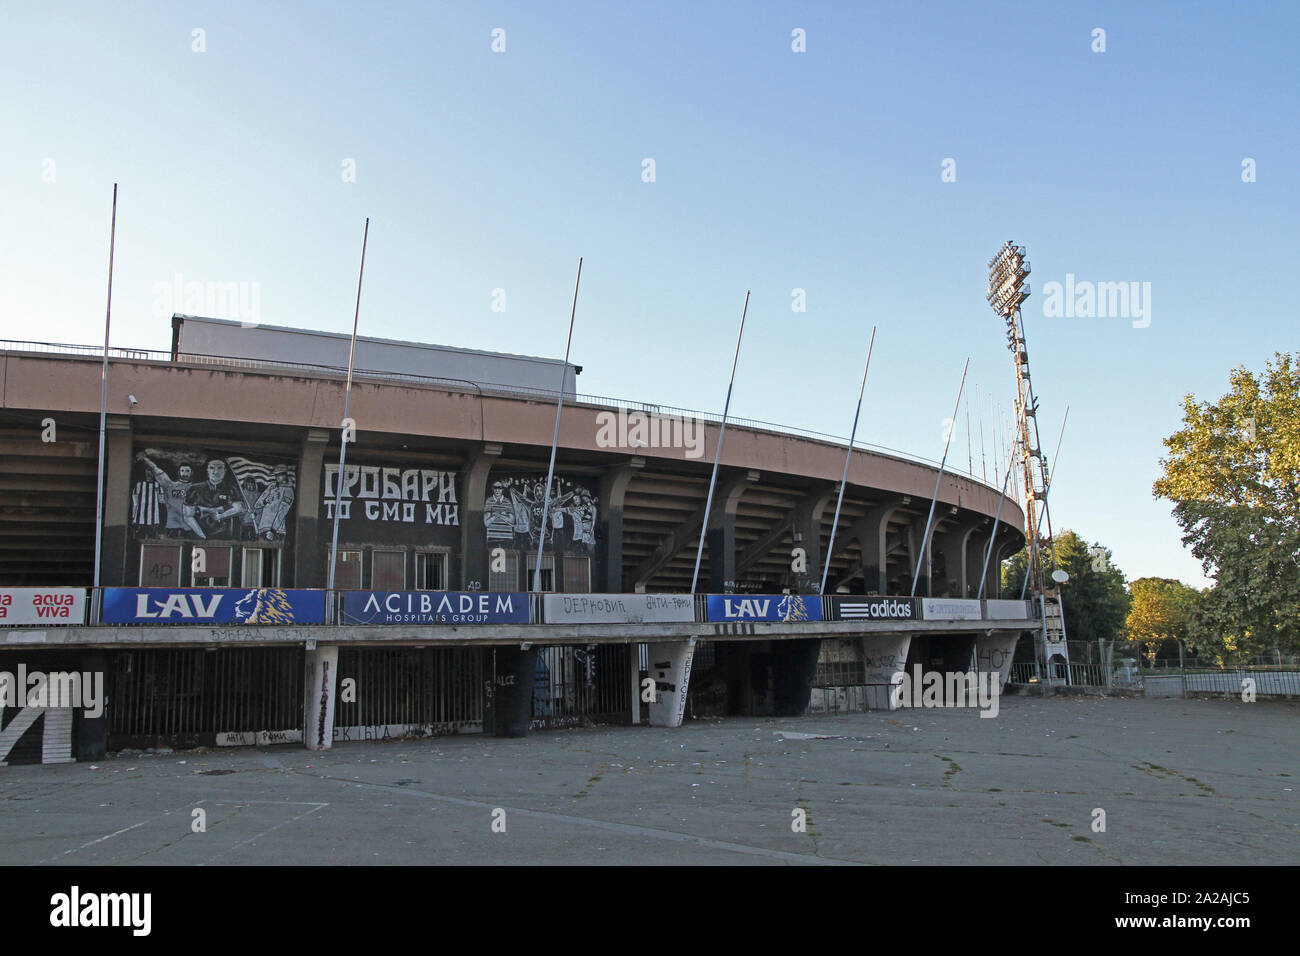 Vista exterior del estadio de fútbol, el Partizan de Belgrado, Serbia. Foto de stock